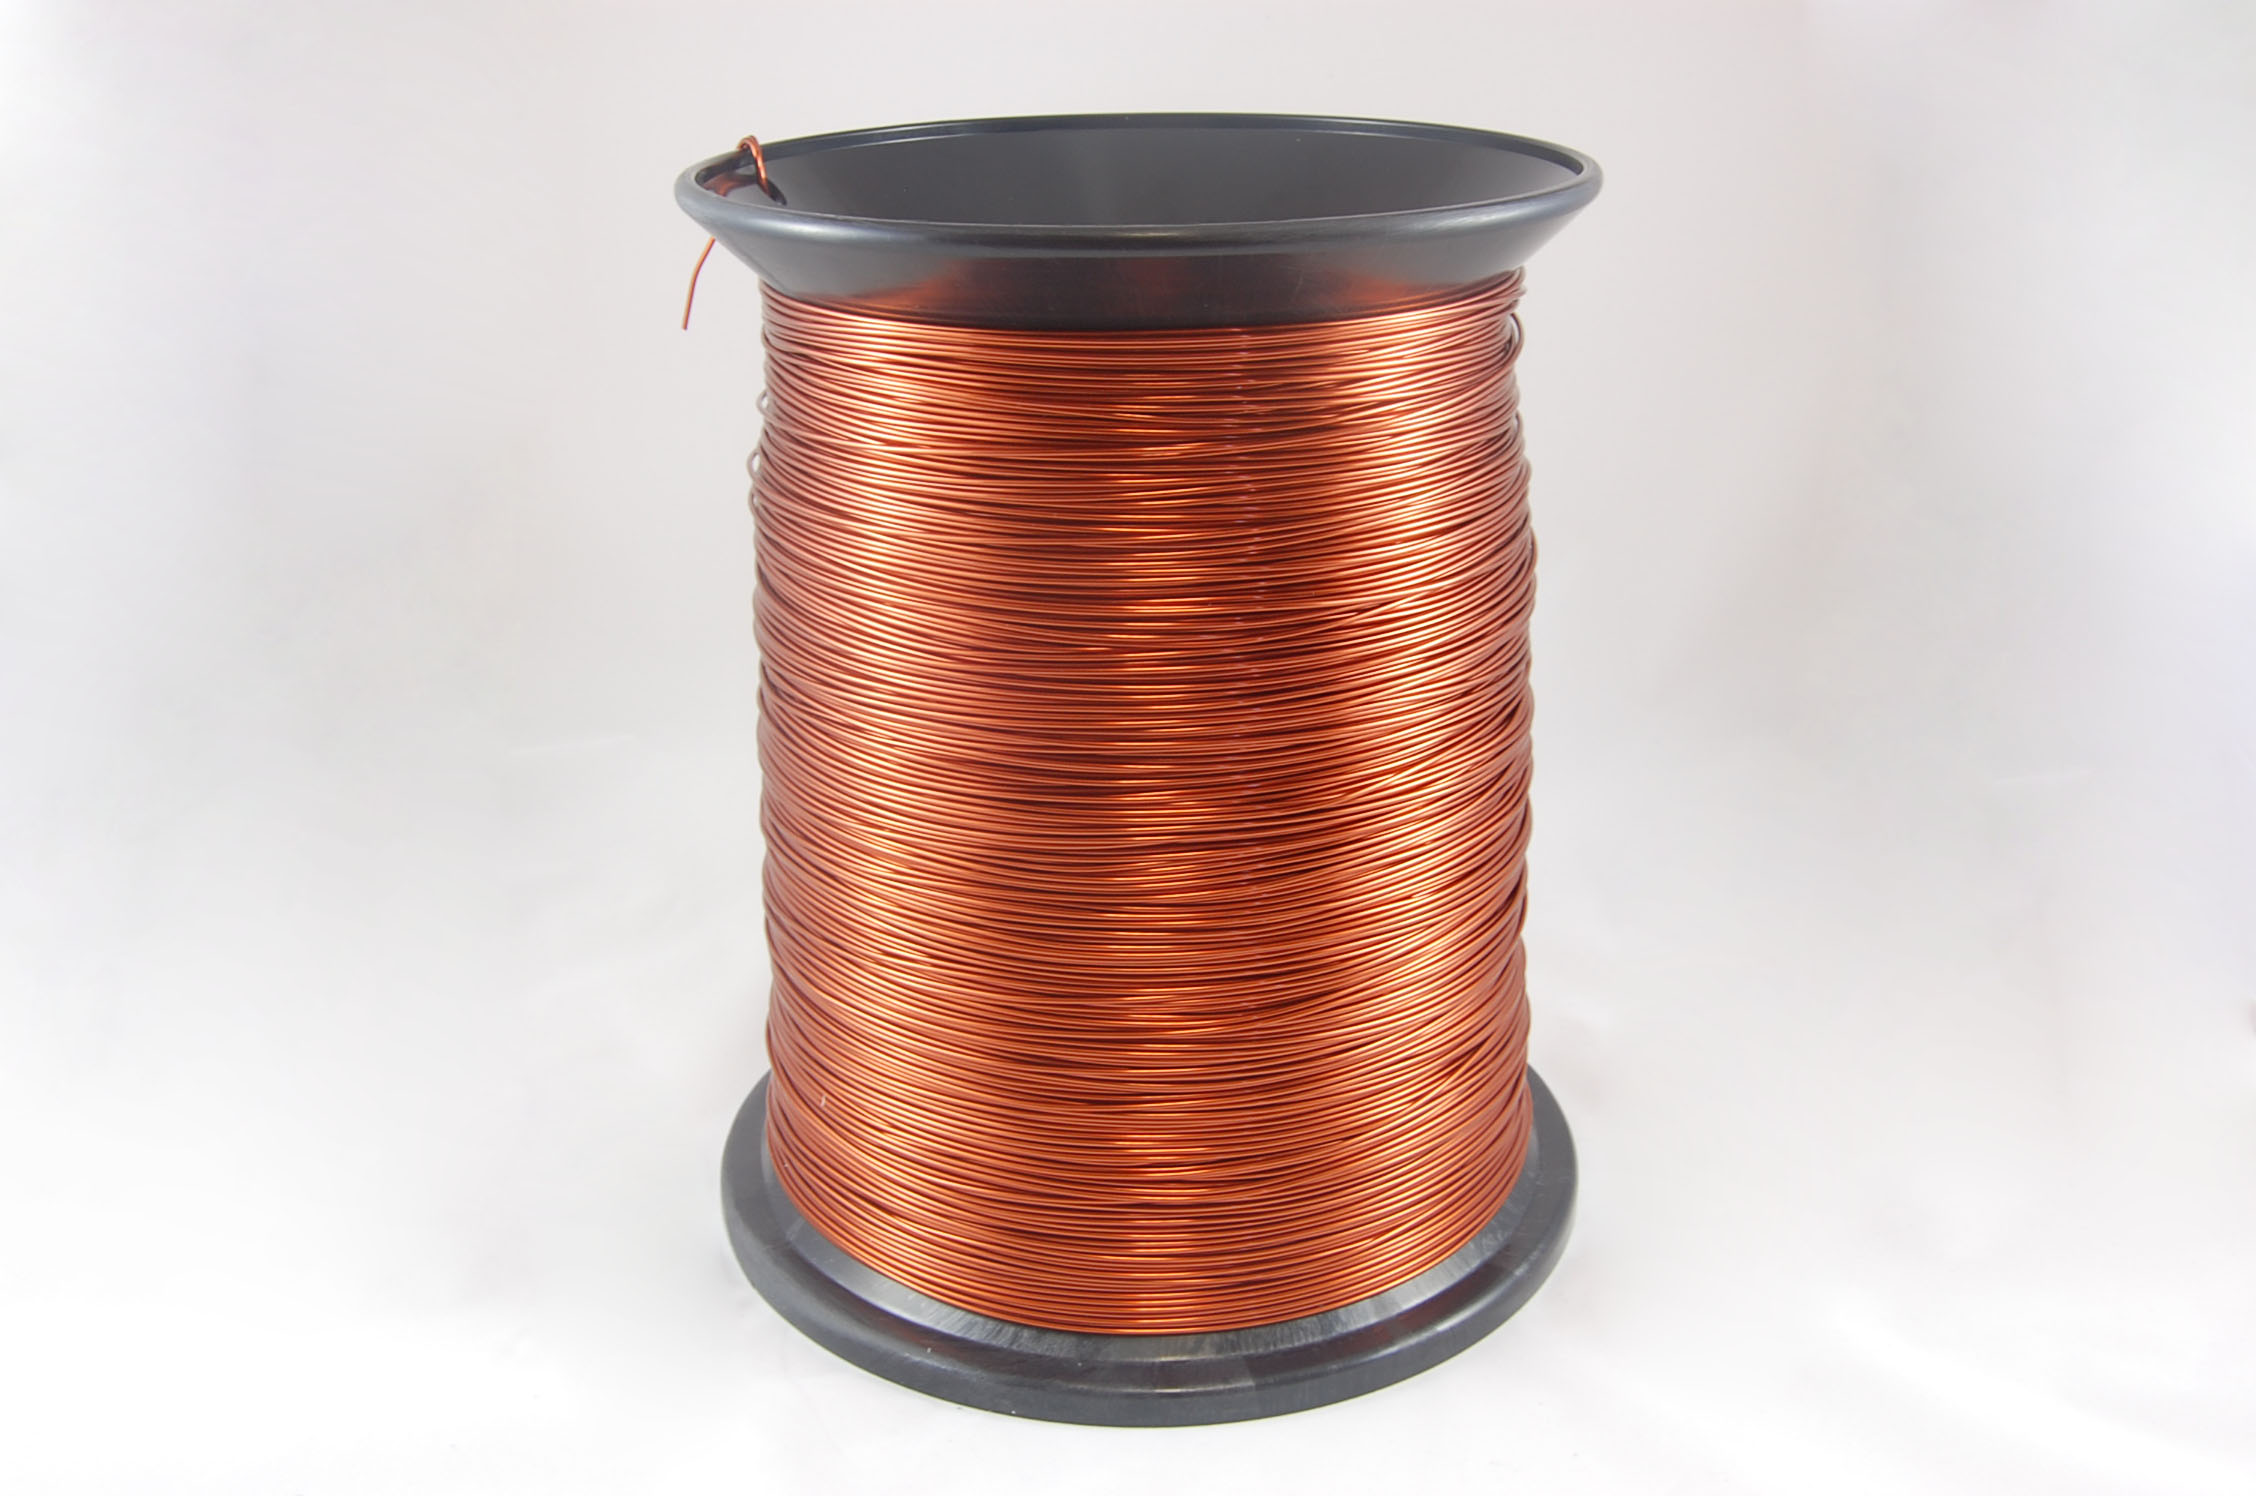 #13 Heavy GP/MR-200 Round MW 35 Copper Magnet Wire 200°C, copper, 85 LB box (average wght.)